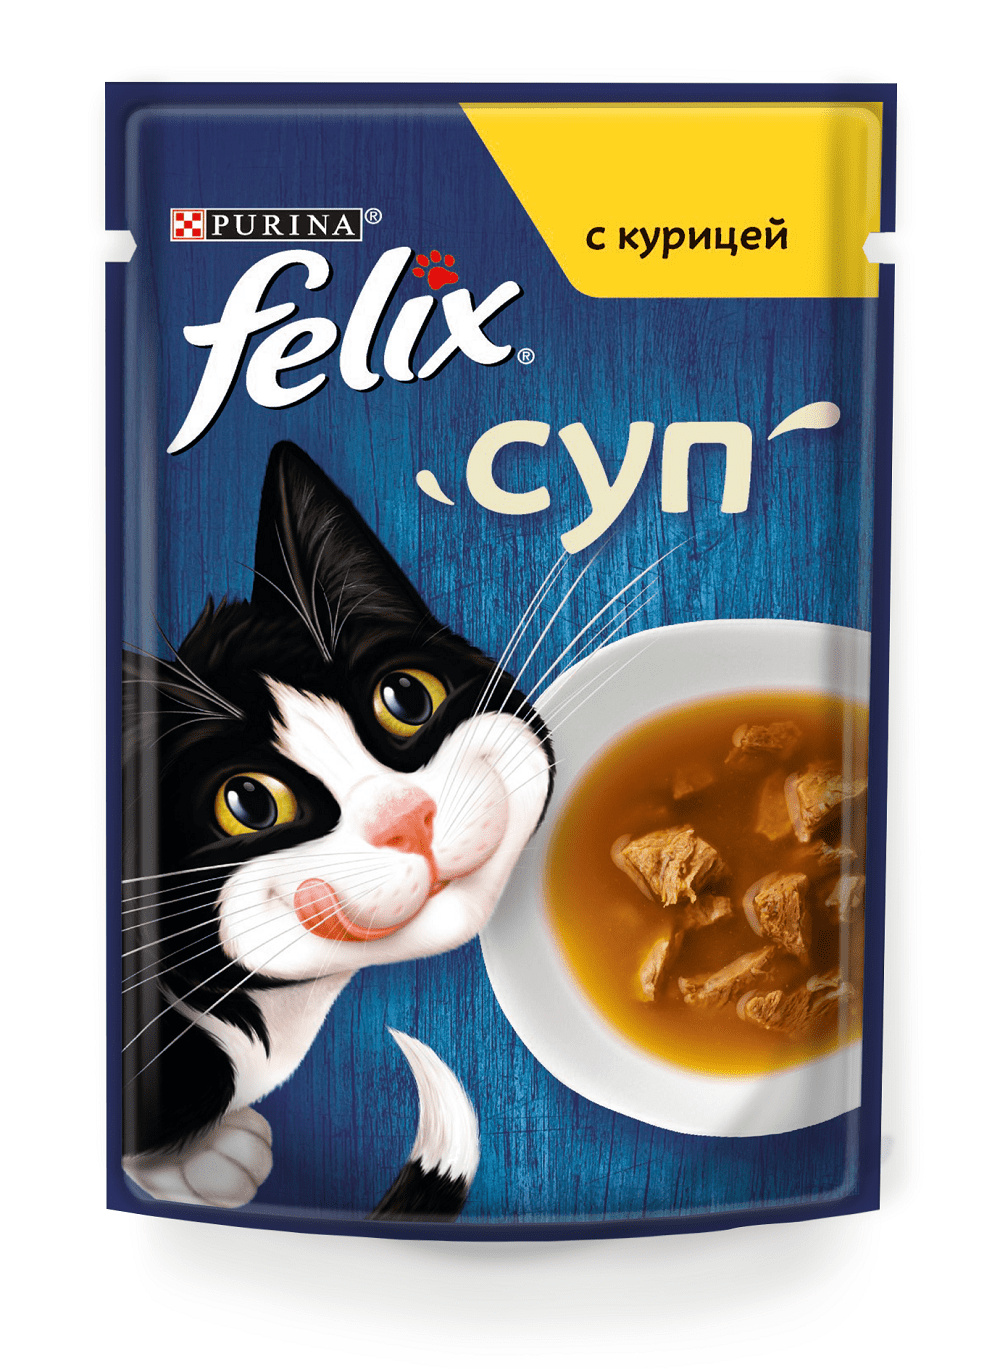 Felix Felix суп для кошек, с курицей (48 г) felix felix суп для кошек с курицей 48 г